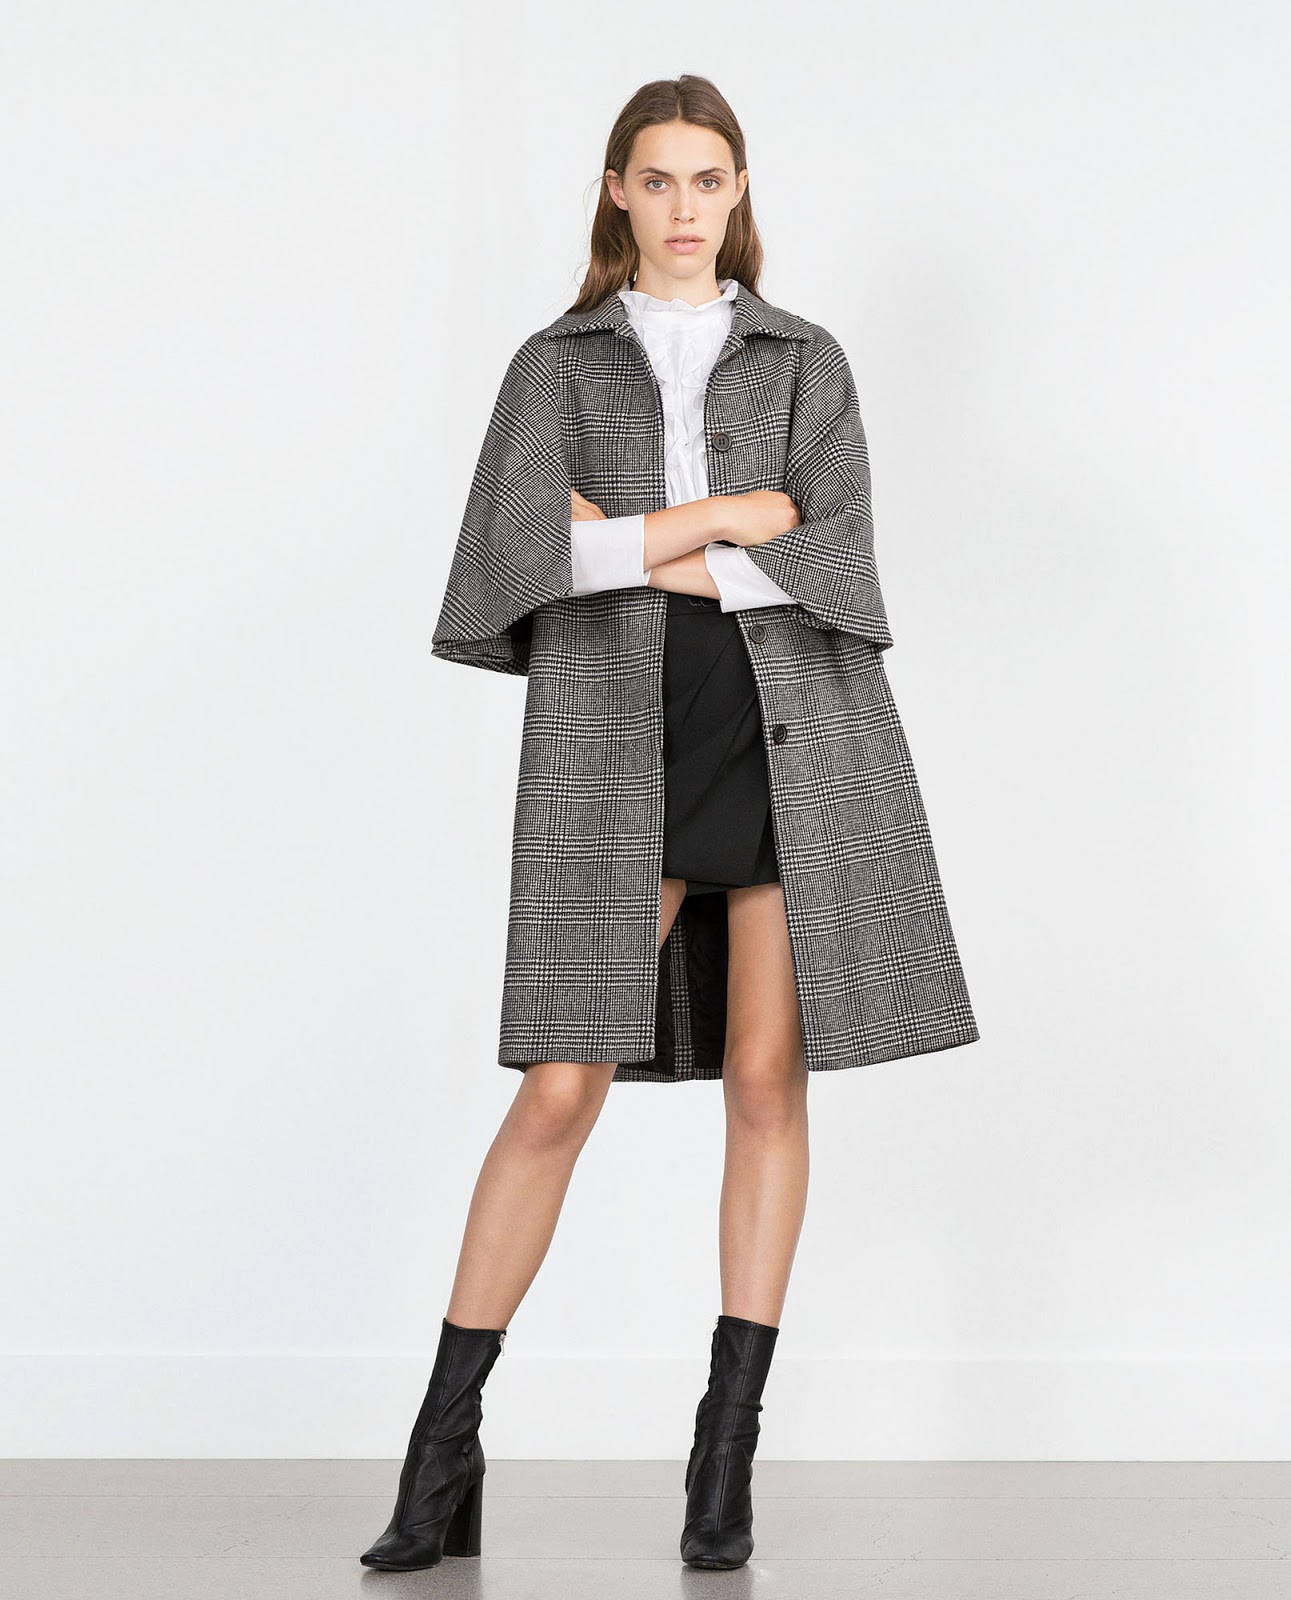 Eniwhere Fashion - Zara coat FW2015-16